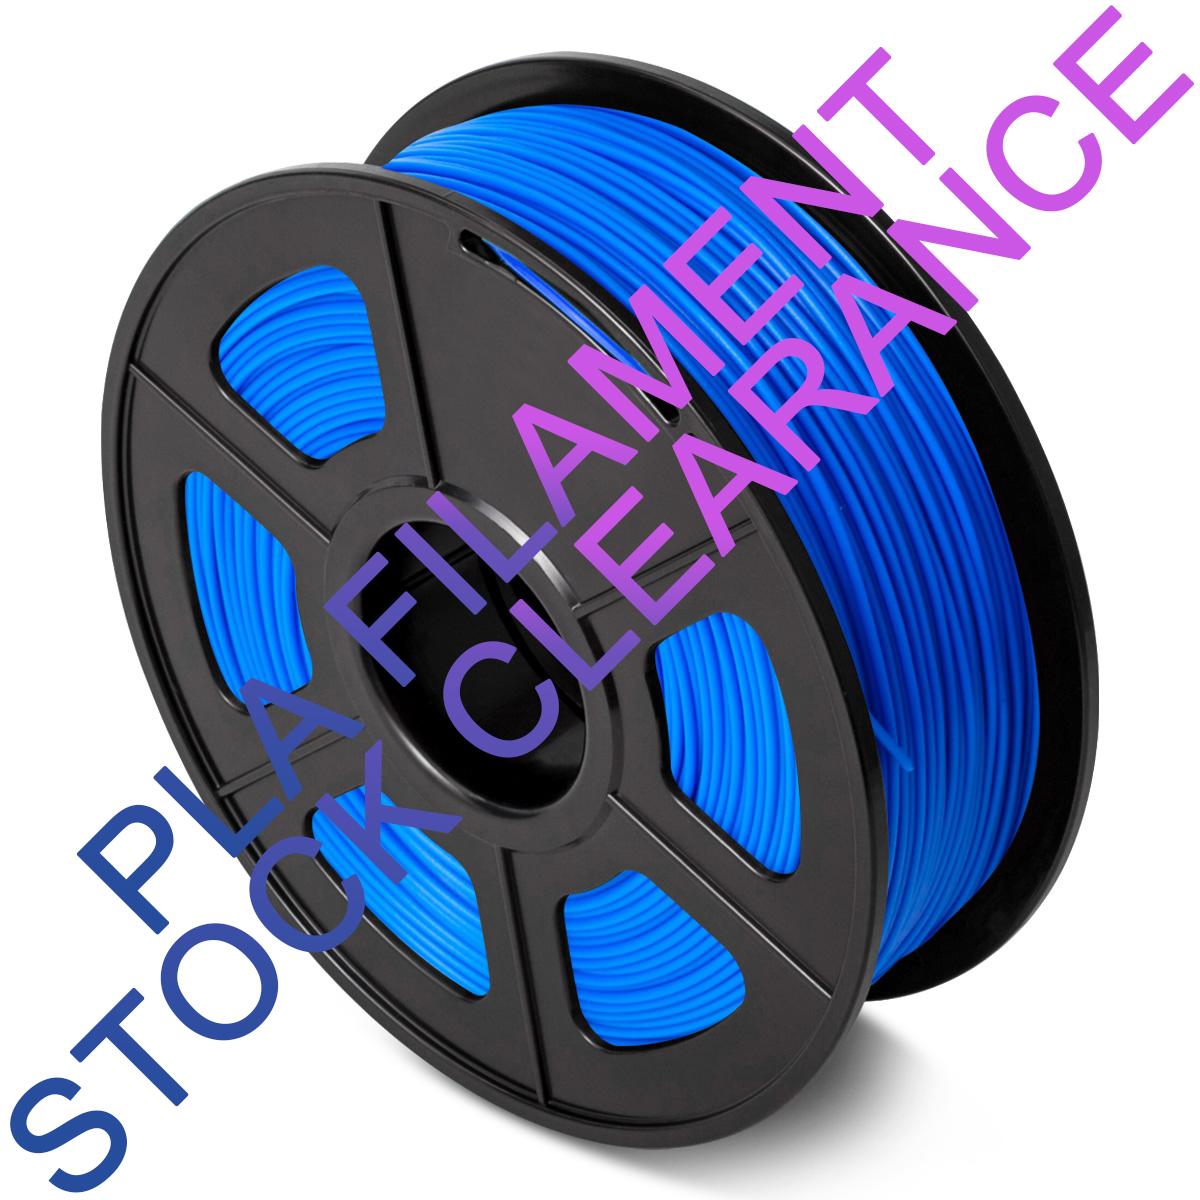 Clearance PLA Blue Filament 1.75mm 3D Printer Filament 1kg